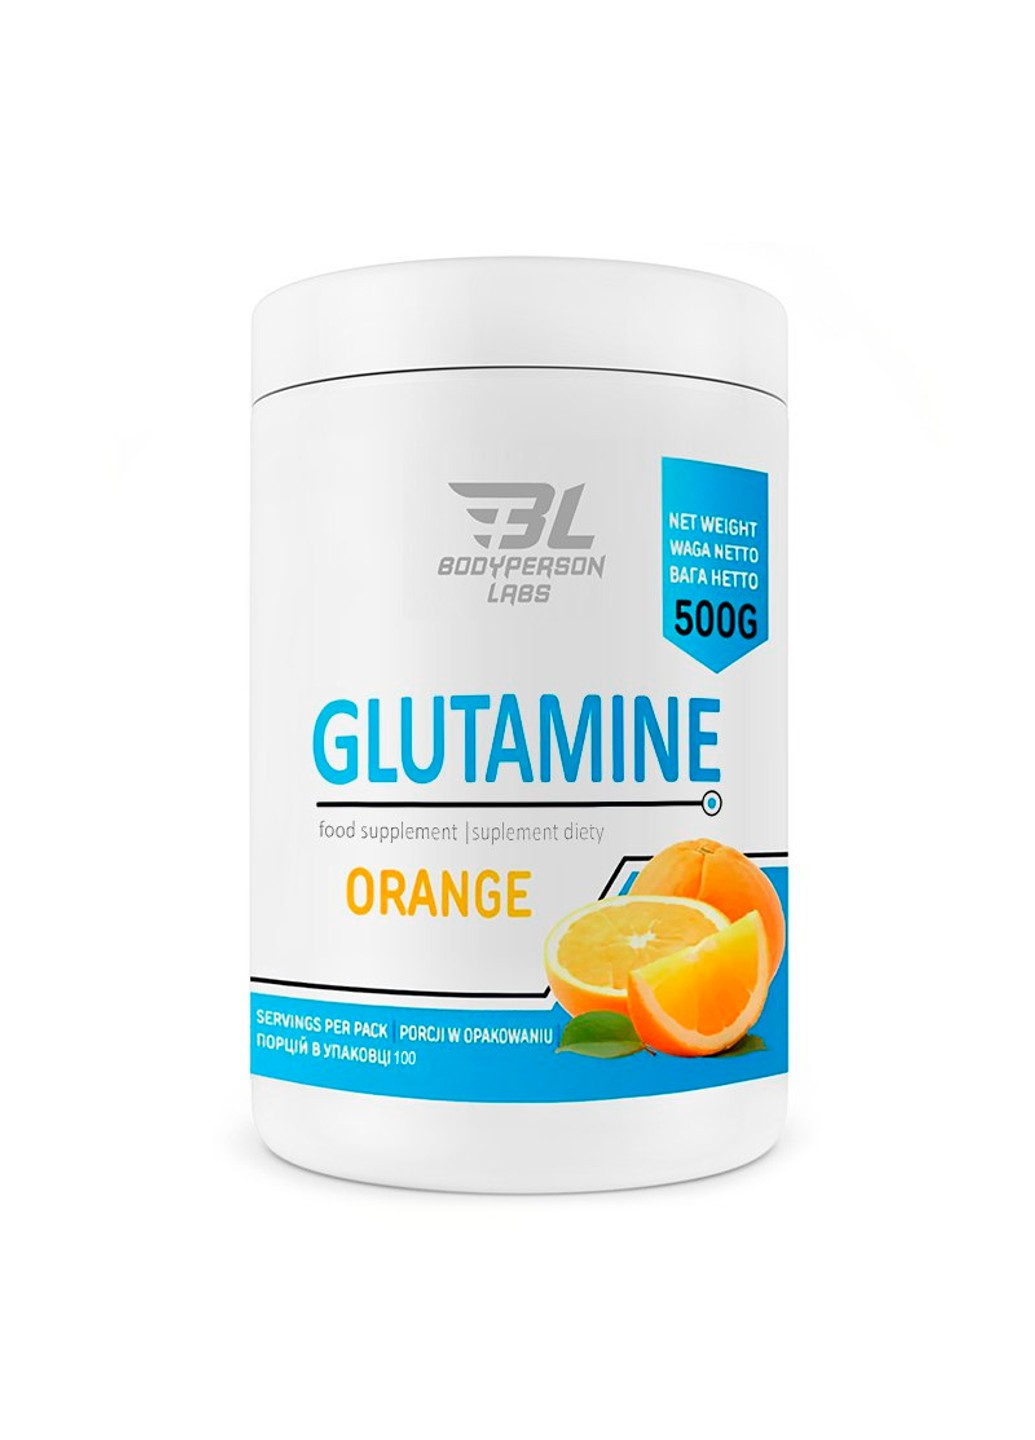 Глютамин Glutamine - 500г Яблоко Bodyperson Labs (269713063)